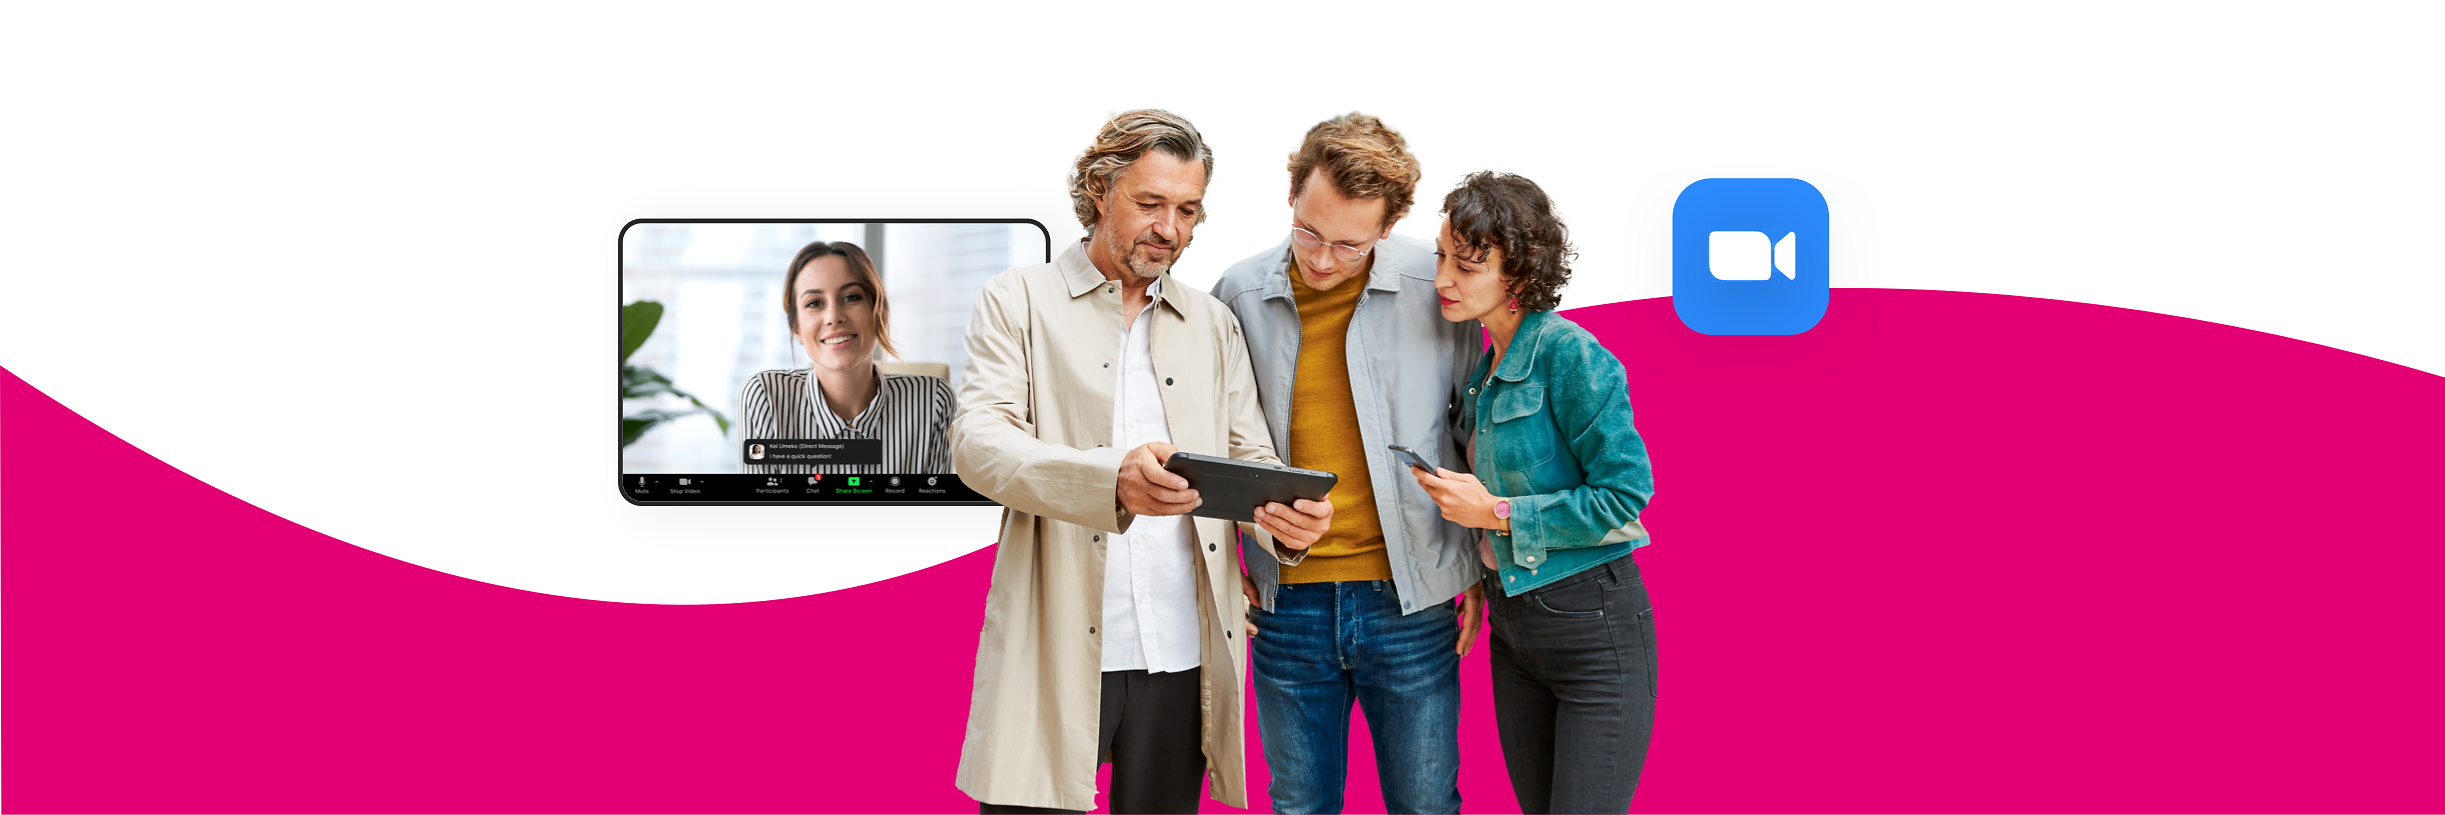 Zoom X – drei Personen halten über Zoom X eine Videokonferenz mit dem Tablet